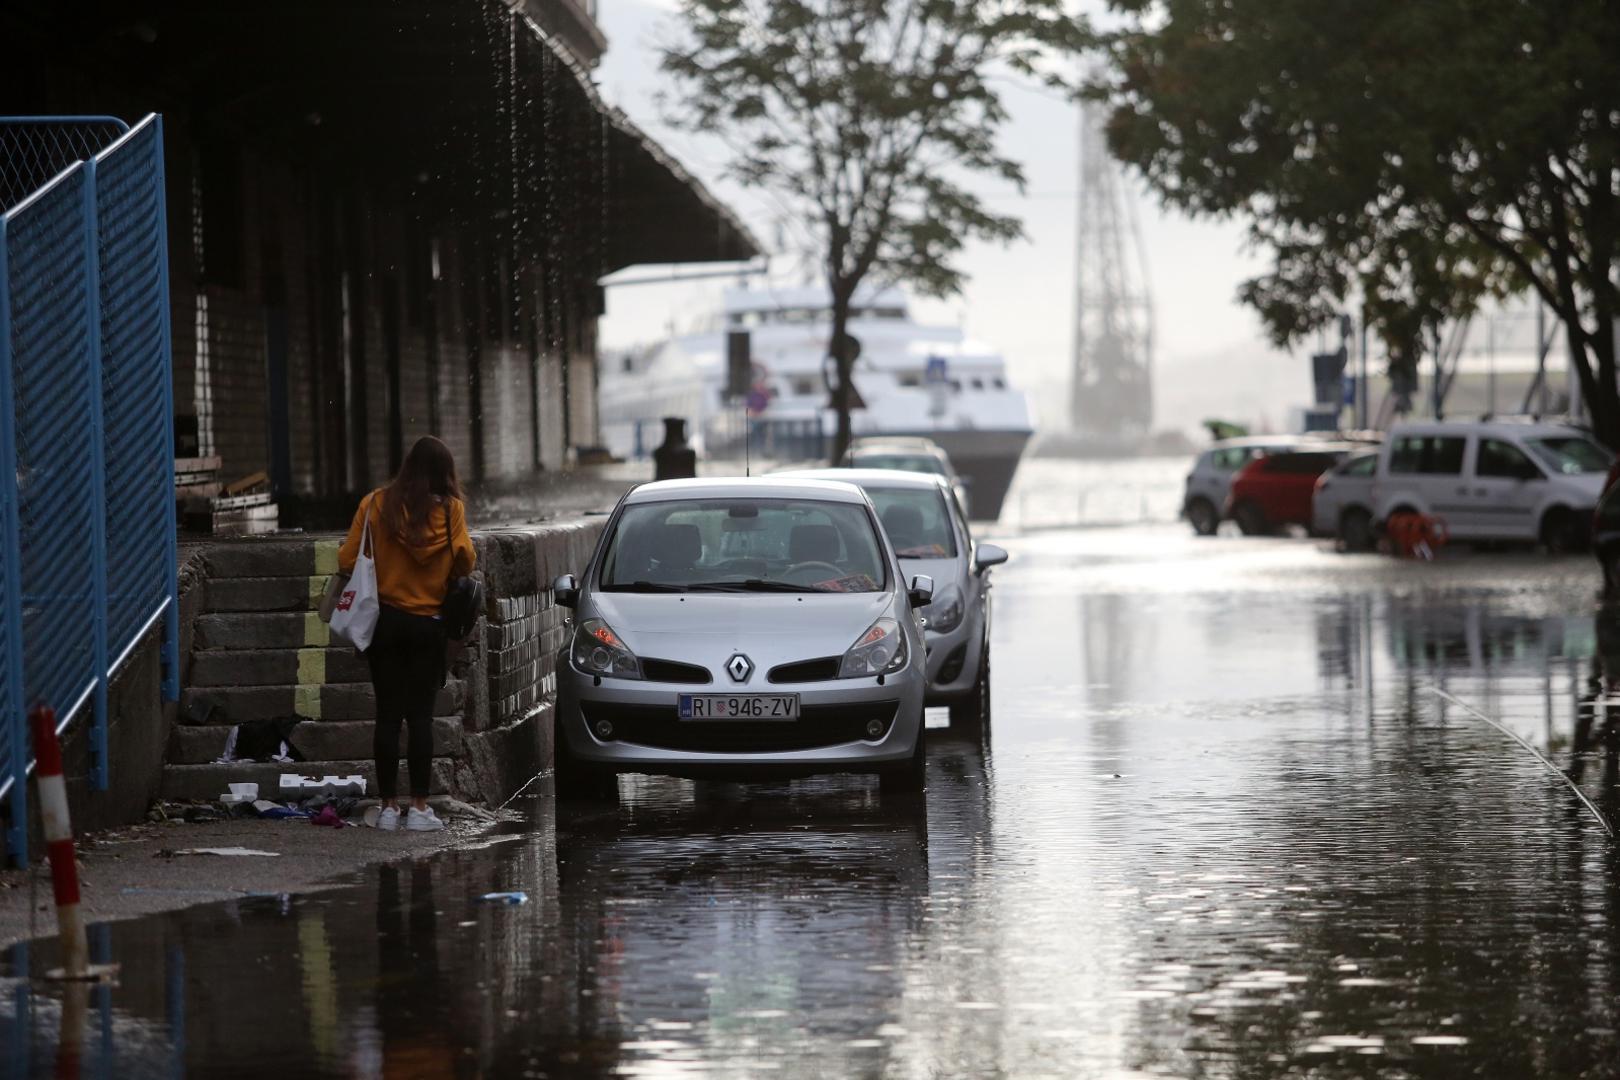 03.10.2020., Rijeka - Zbog jake kise poplavljena je ulica iza zgrade Carine. Photo: Goran Kovacic/PIXSELL